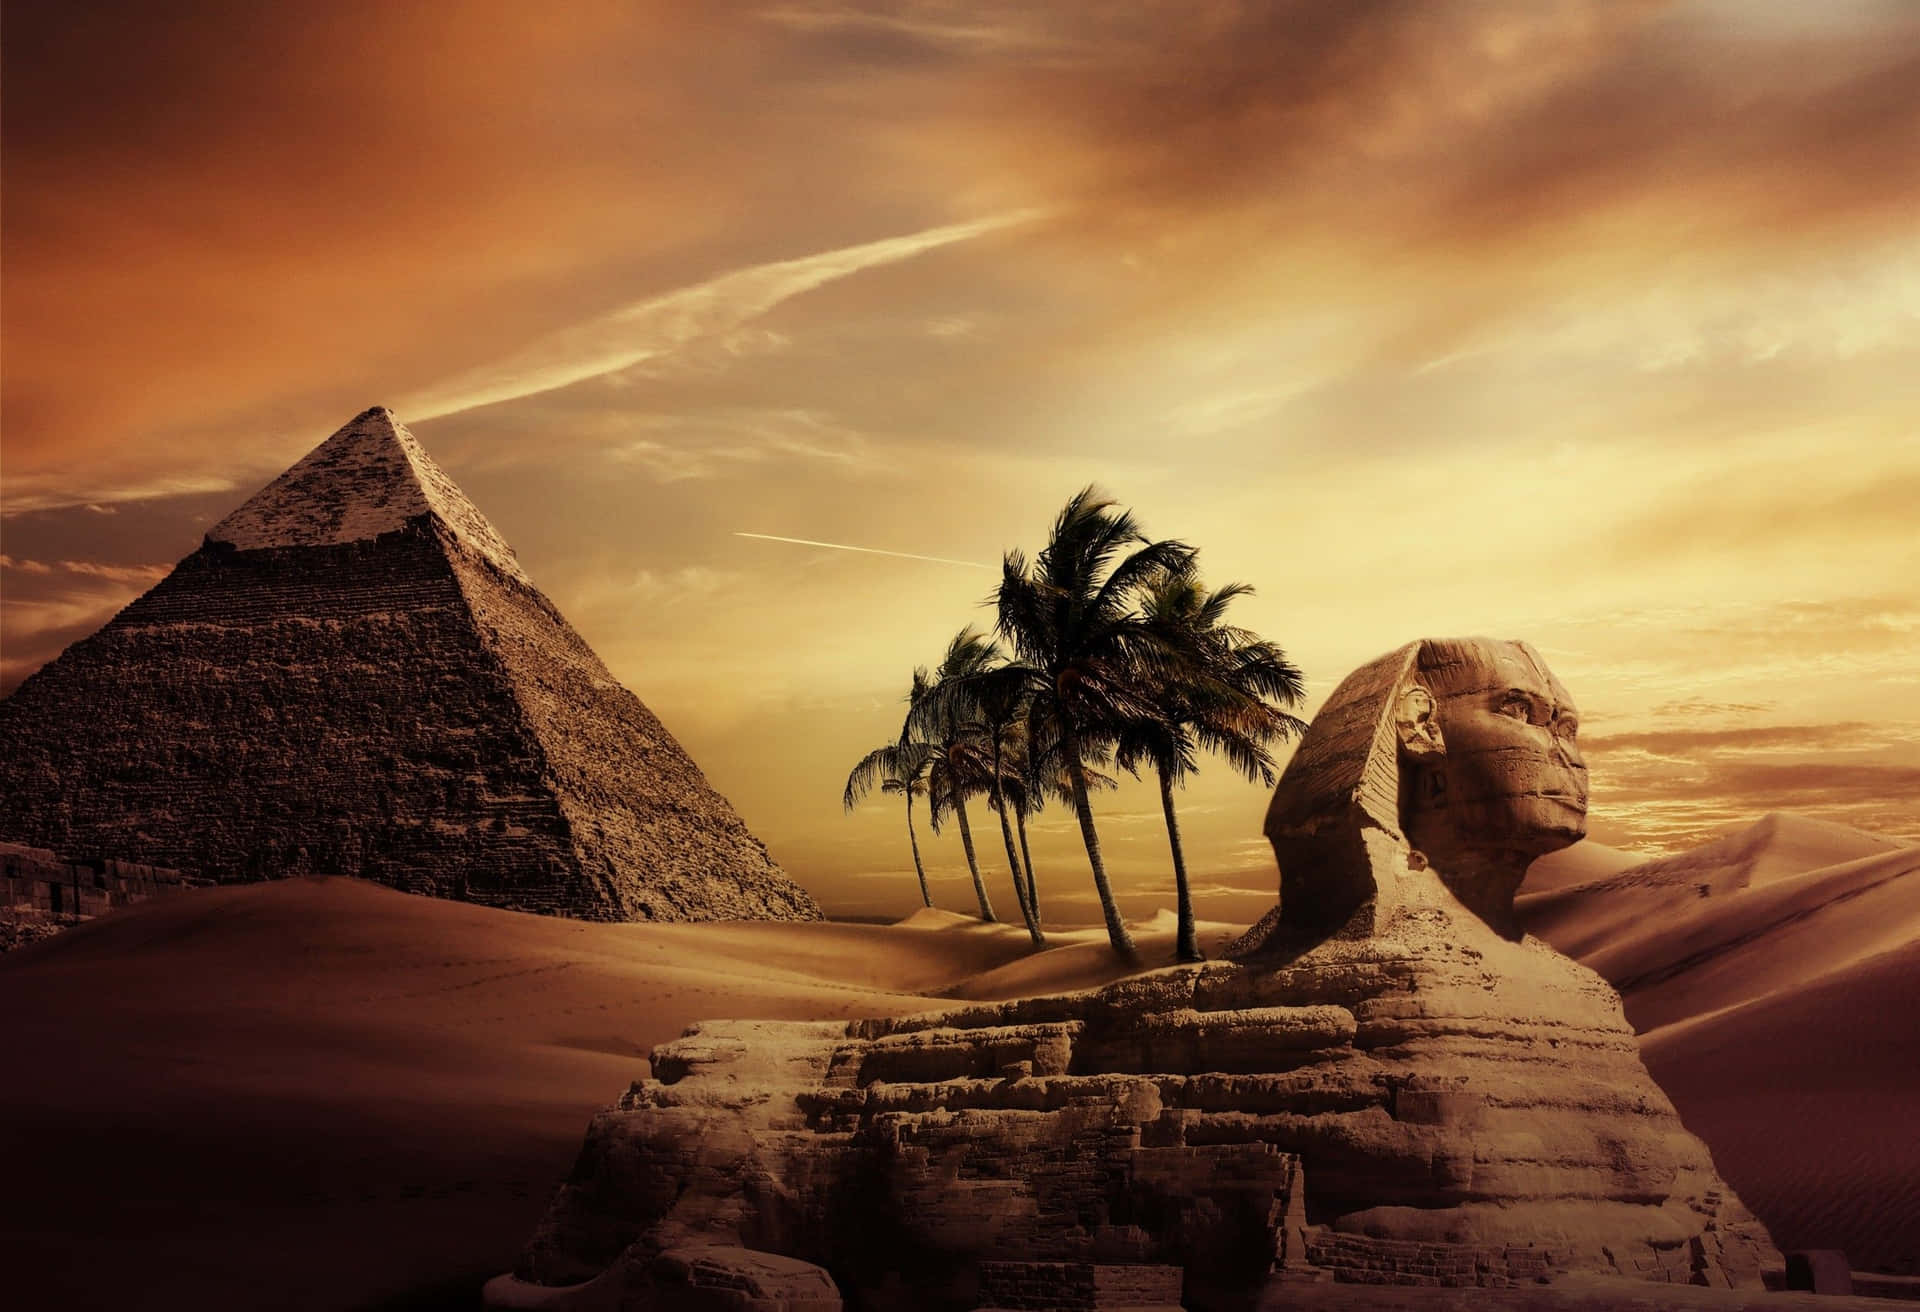 Maestosipiramidi Di Giza In Egitto.